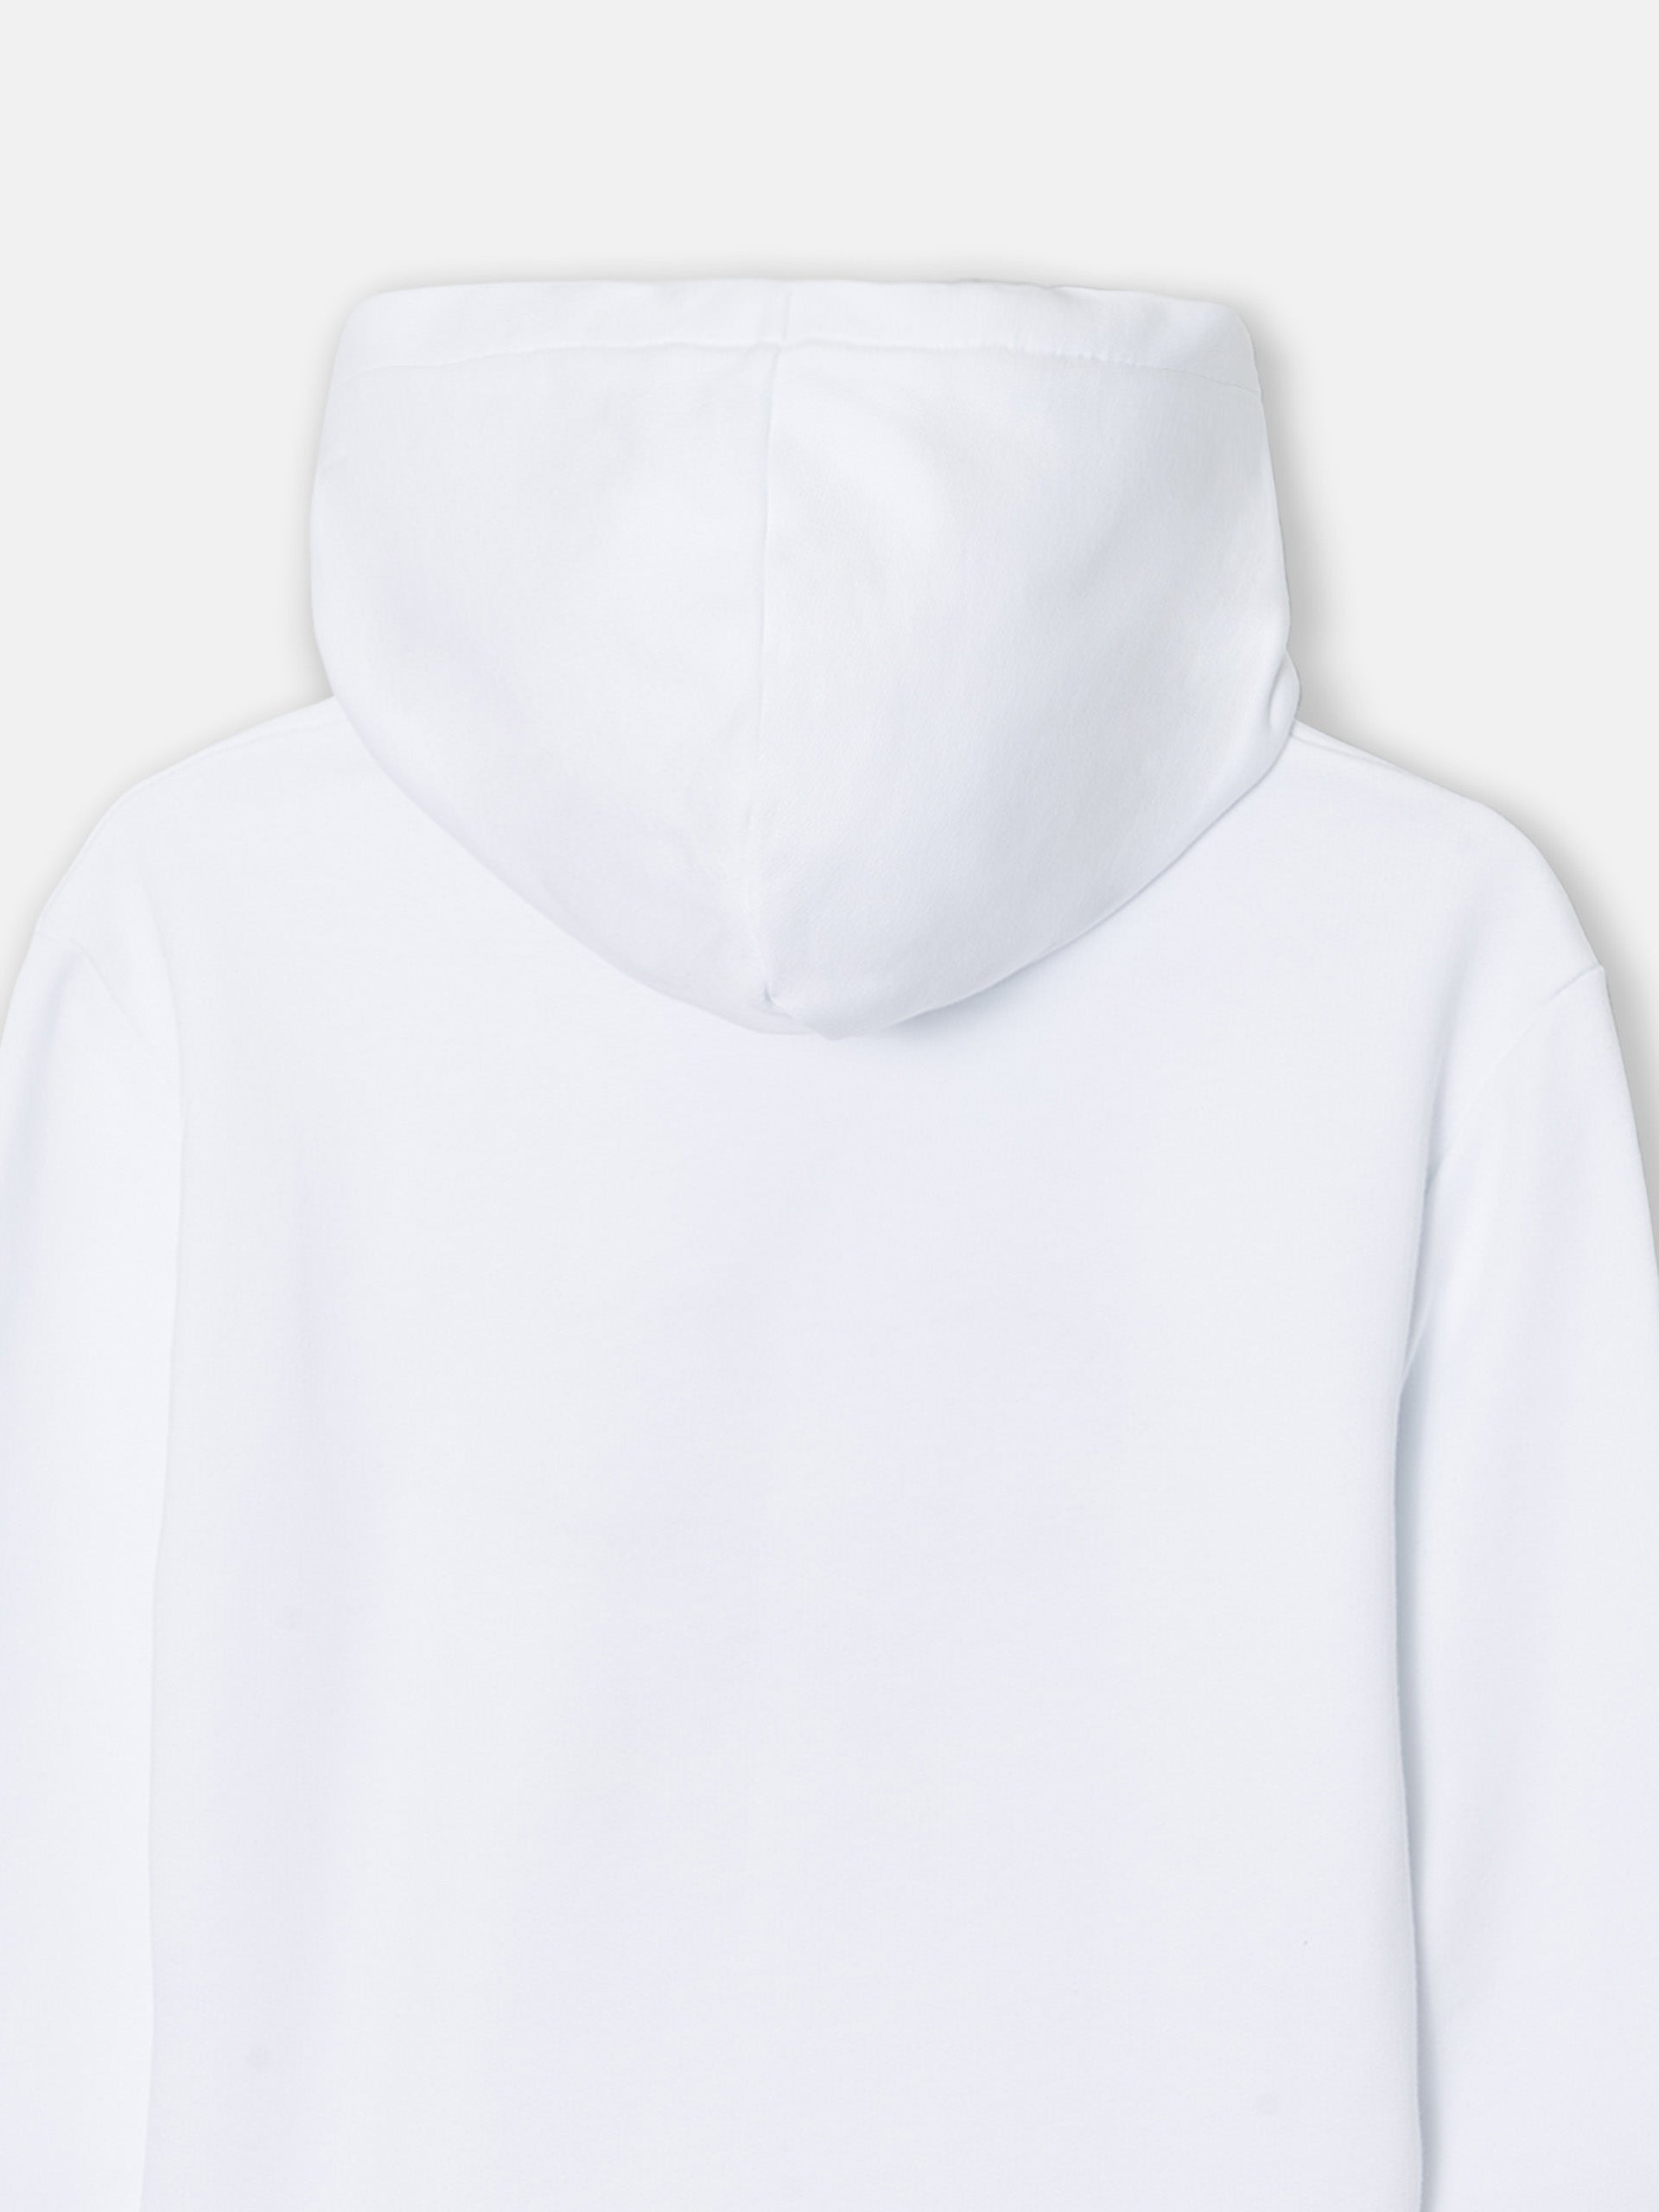 White ethnic racket woman sweatshirt